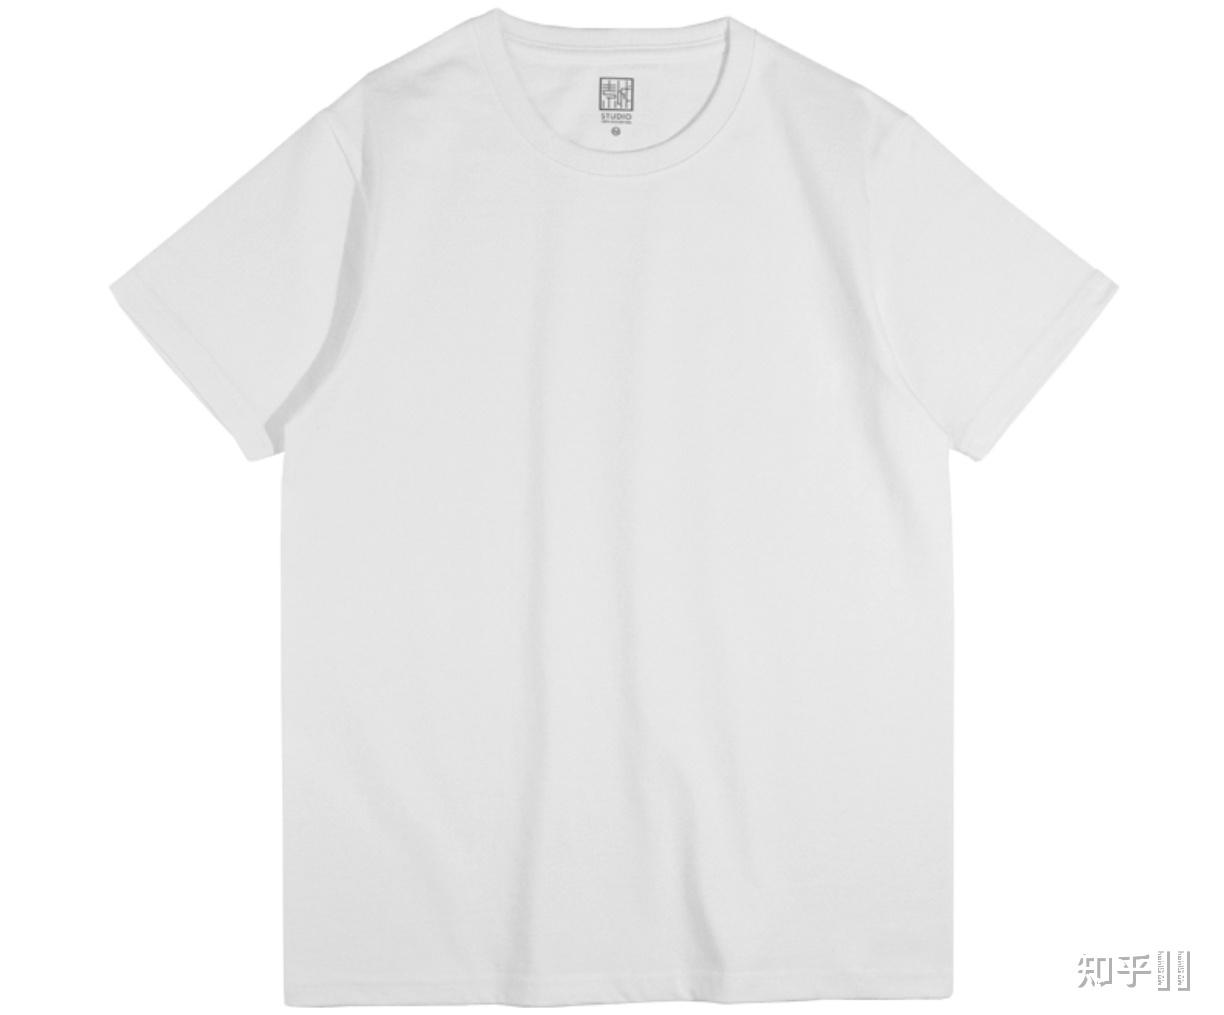 不透的白t恤推荐 可以单穿那种?